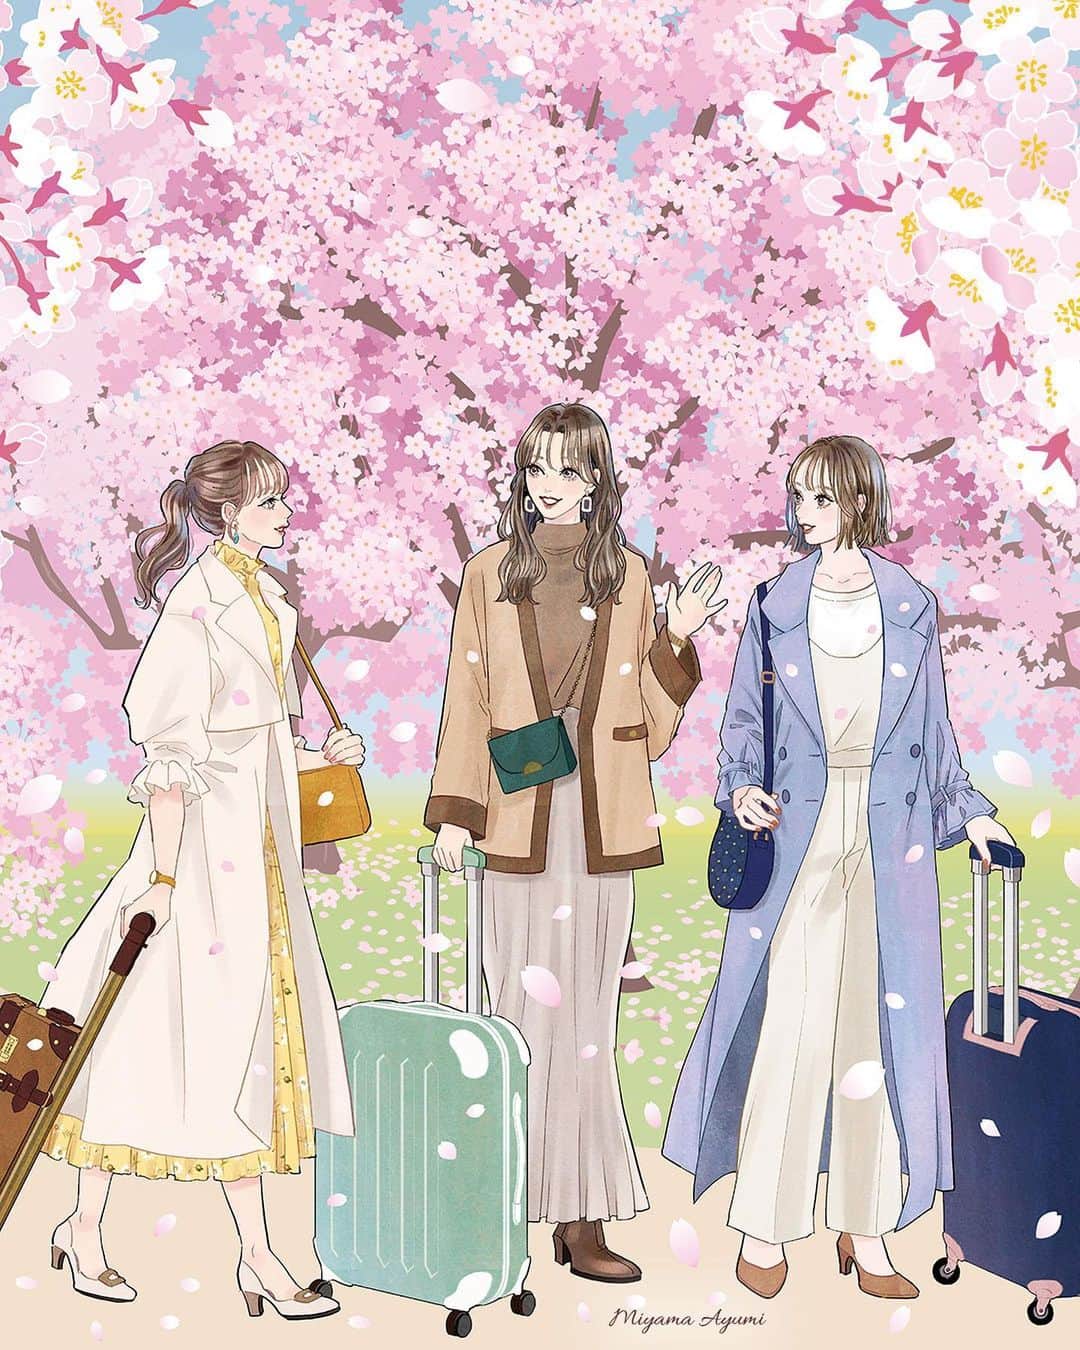 miya(ミヤマアユミ)のインスタグラム：「JR東京駅で開催される春フェアのメインビジュアルを担当しました🌸 明日からです。  この絵は桜と旅がテーマです👜大きな柱に展示される予定です。ご覧頂けましたら嬉しいです。  『東京駅から春を感じよう 2023 Spring at Tokyo Station』 3月27日〜4月9日まで🌸 東京駅 @tokyostationcity   ポストカードのプレゼント企画も開催されます。 詳細は「TOKYO STATION CITY」Webサイトをご確認ください。 http://www.tokyostationcity.com/news/20230322140000/ ※ポストカードの引き換えは4/7(金)〜4/9(日)の3日間です。  JR東京駅直結の「丸善丸の内本店」さんでは画集 #花kotoba🌸 のサイン本と色紙を置いて頂きます📙イベントに合わせて桜の絵を描きました。 3/28(火)入荷予定です。(遅れる可能性もあります。)  旅行やお買い物がてら東京駅で春を感じて頂けましたら嬉しいです🌷  #桜 #さくら #サクラ #spring #東京ステーションシティ #東京駅 #JR #旅行 #旅行コーデ  #artwork #watercolor #水彩 #透明水彩 #art #illust #illustration #draw #illustrator #イラスト #イラストレーター #手描き #手書き #アナログイラスト #花 #flower #flowers #ファッション #fashion #ファッションイラスト」